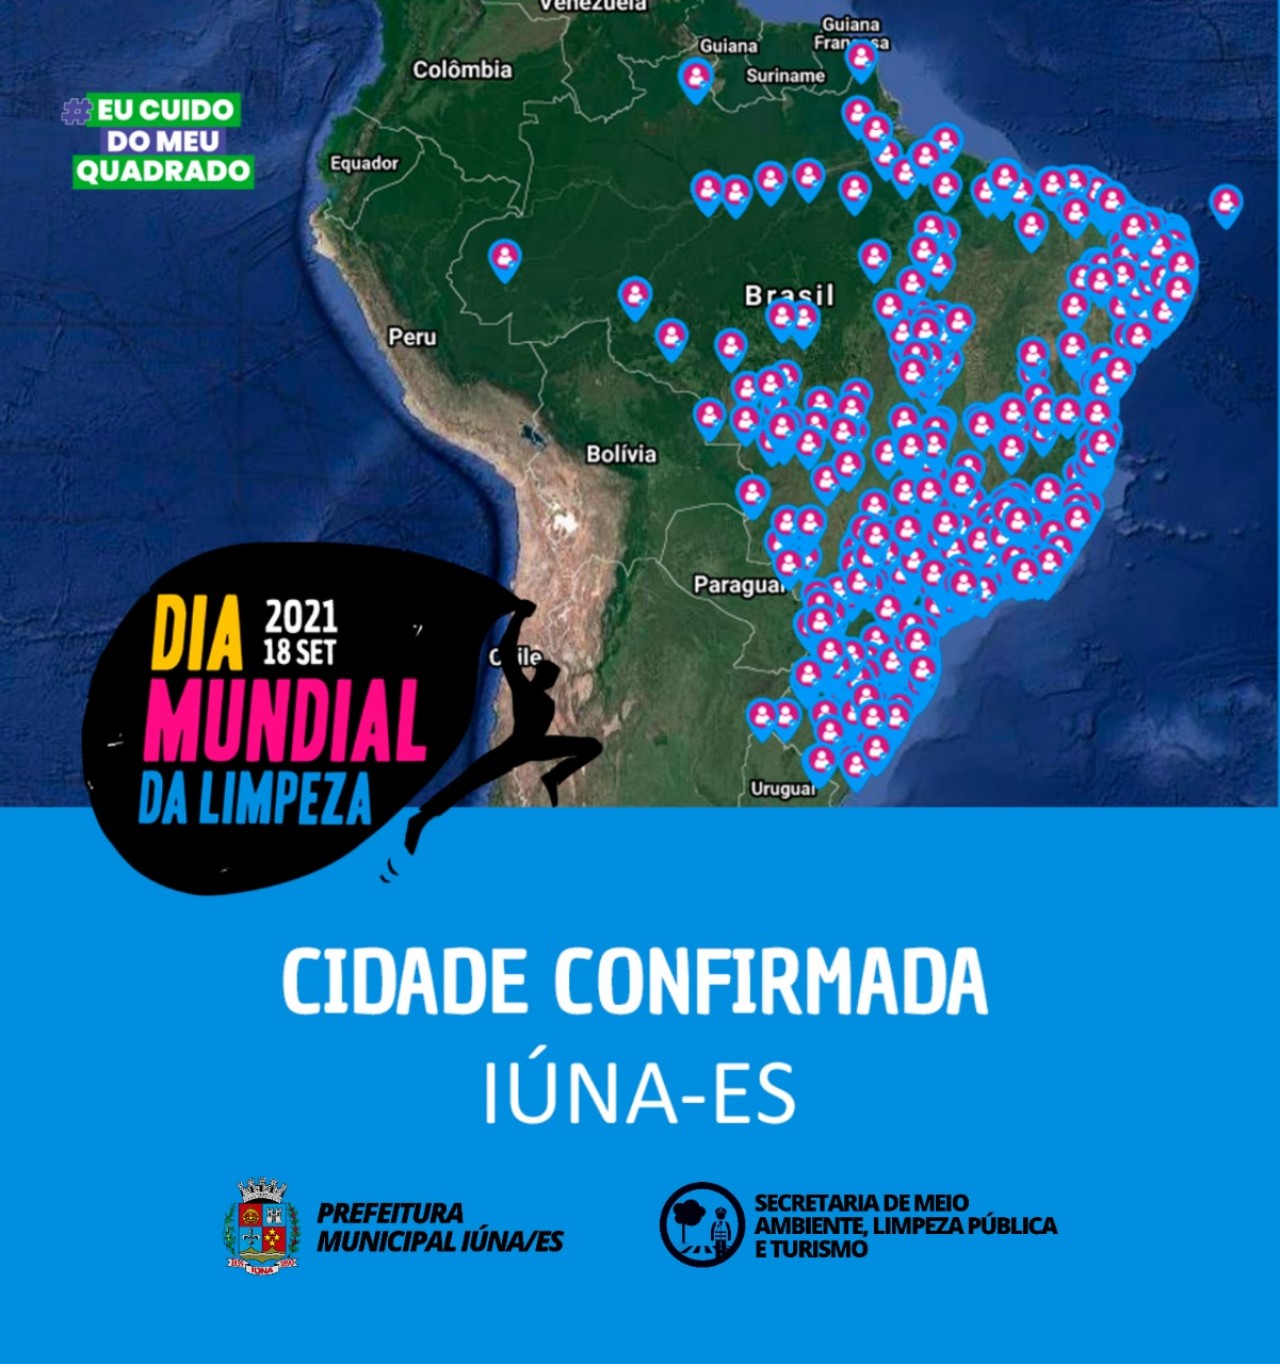 Já tá sabendo que dia 18 de setembro acontece a 4° edição do #DiaMundialDaLimpeza